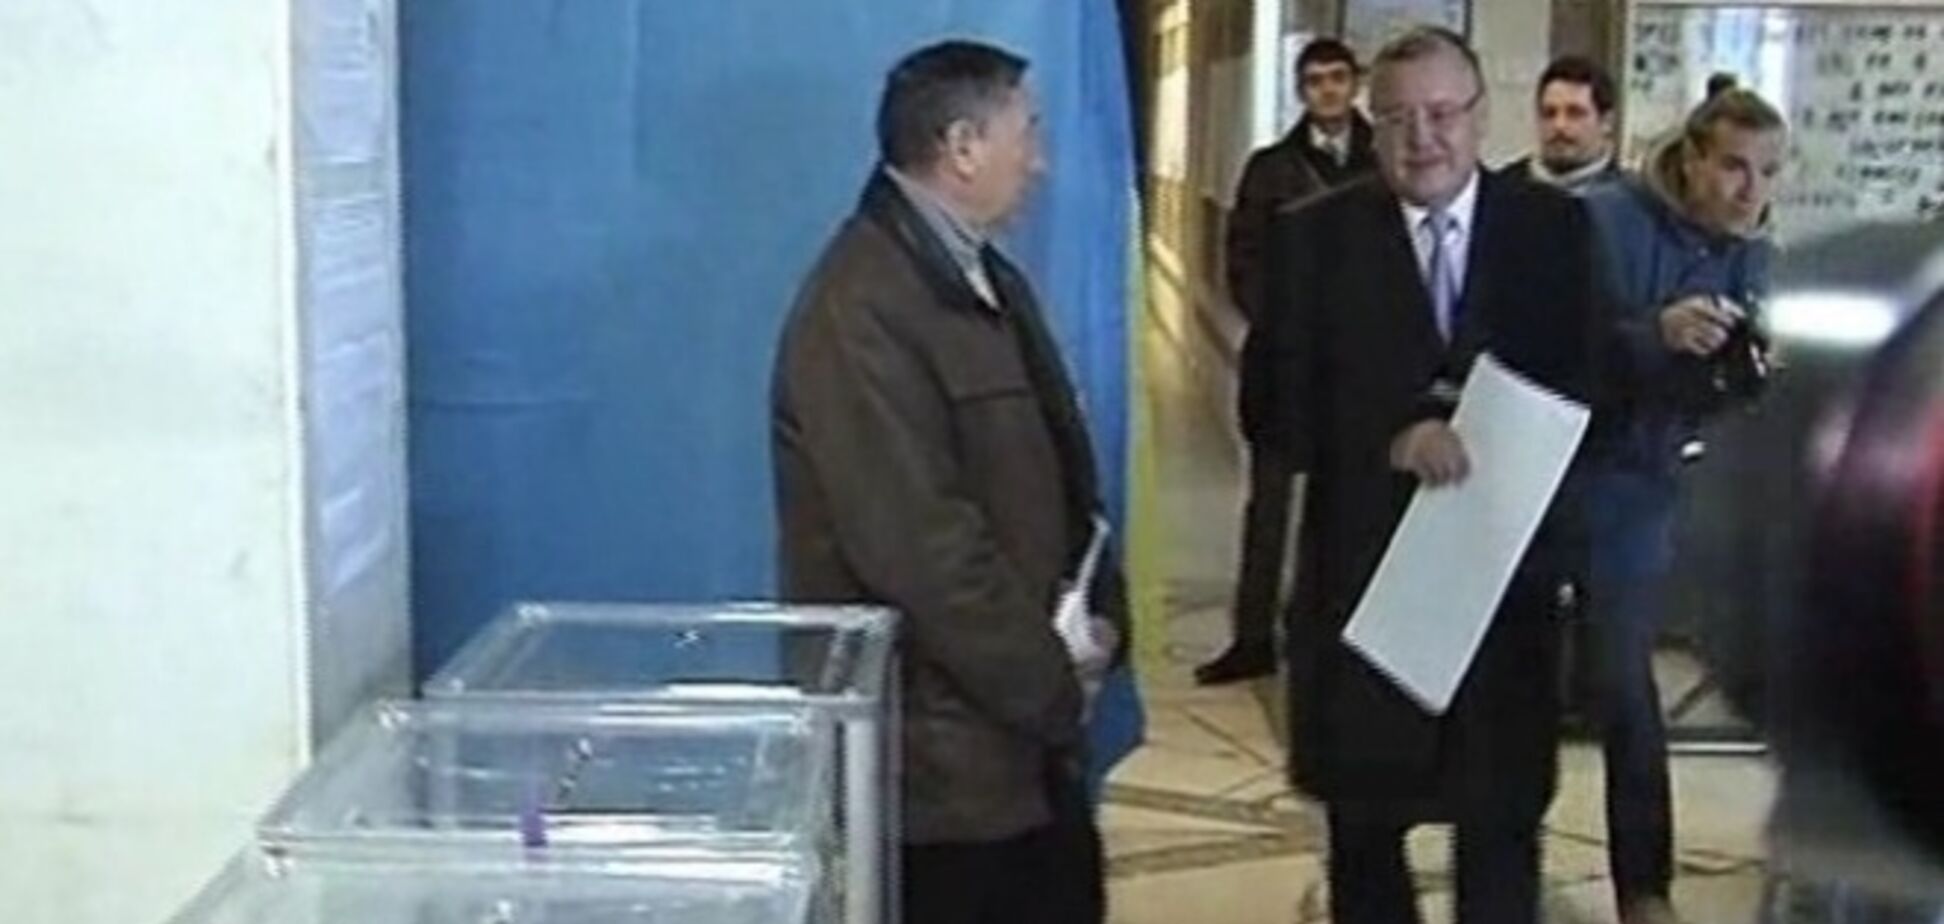 Симоненко надеется на здравый ум избирателей, а Гриценко – на свержение негодяев